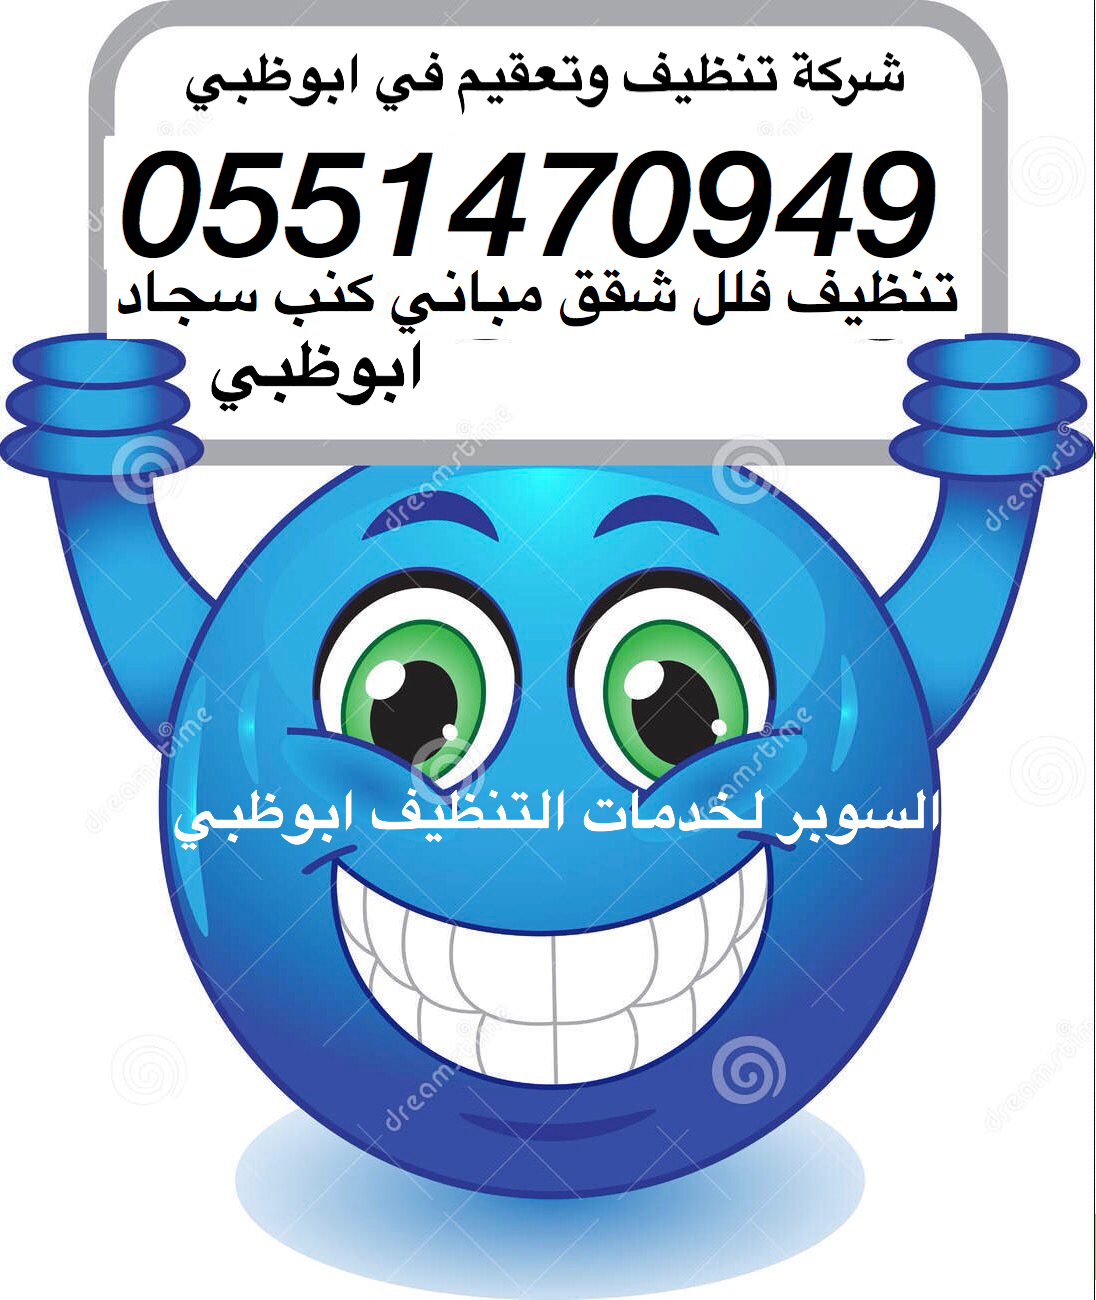 شركة تنظيف ابوظبي 0551470949